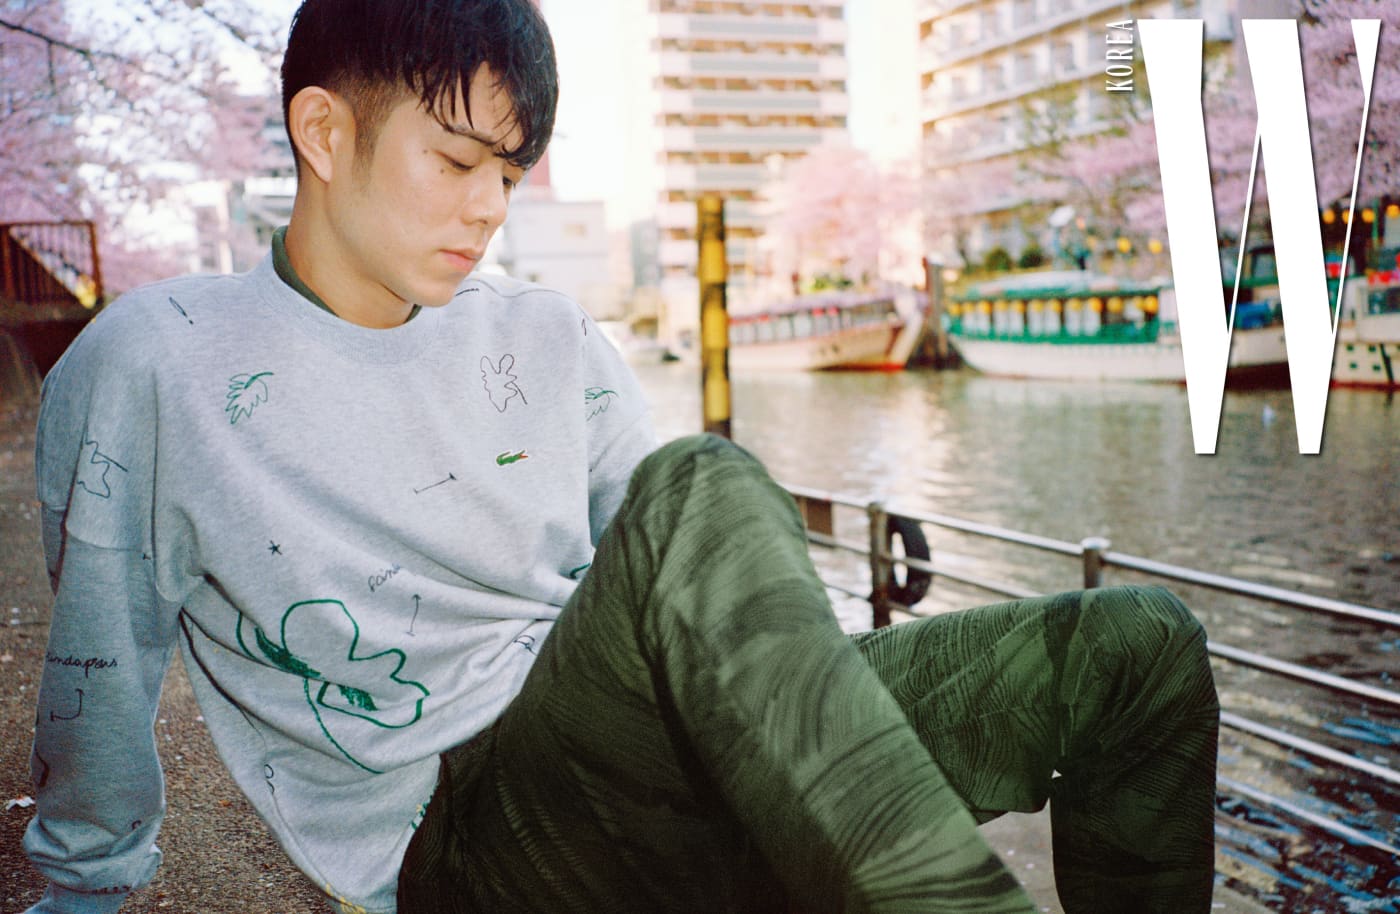 그레이 색상의 트로피컬 프린트 스웨트셔츠와 안에 겹쳐 입은 카키색 피케 폴로 셔츠, 나무 질감을 표현한 프린트가 독특한 치노 팬츠는 Lacoste Live 제품.